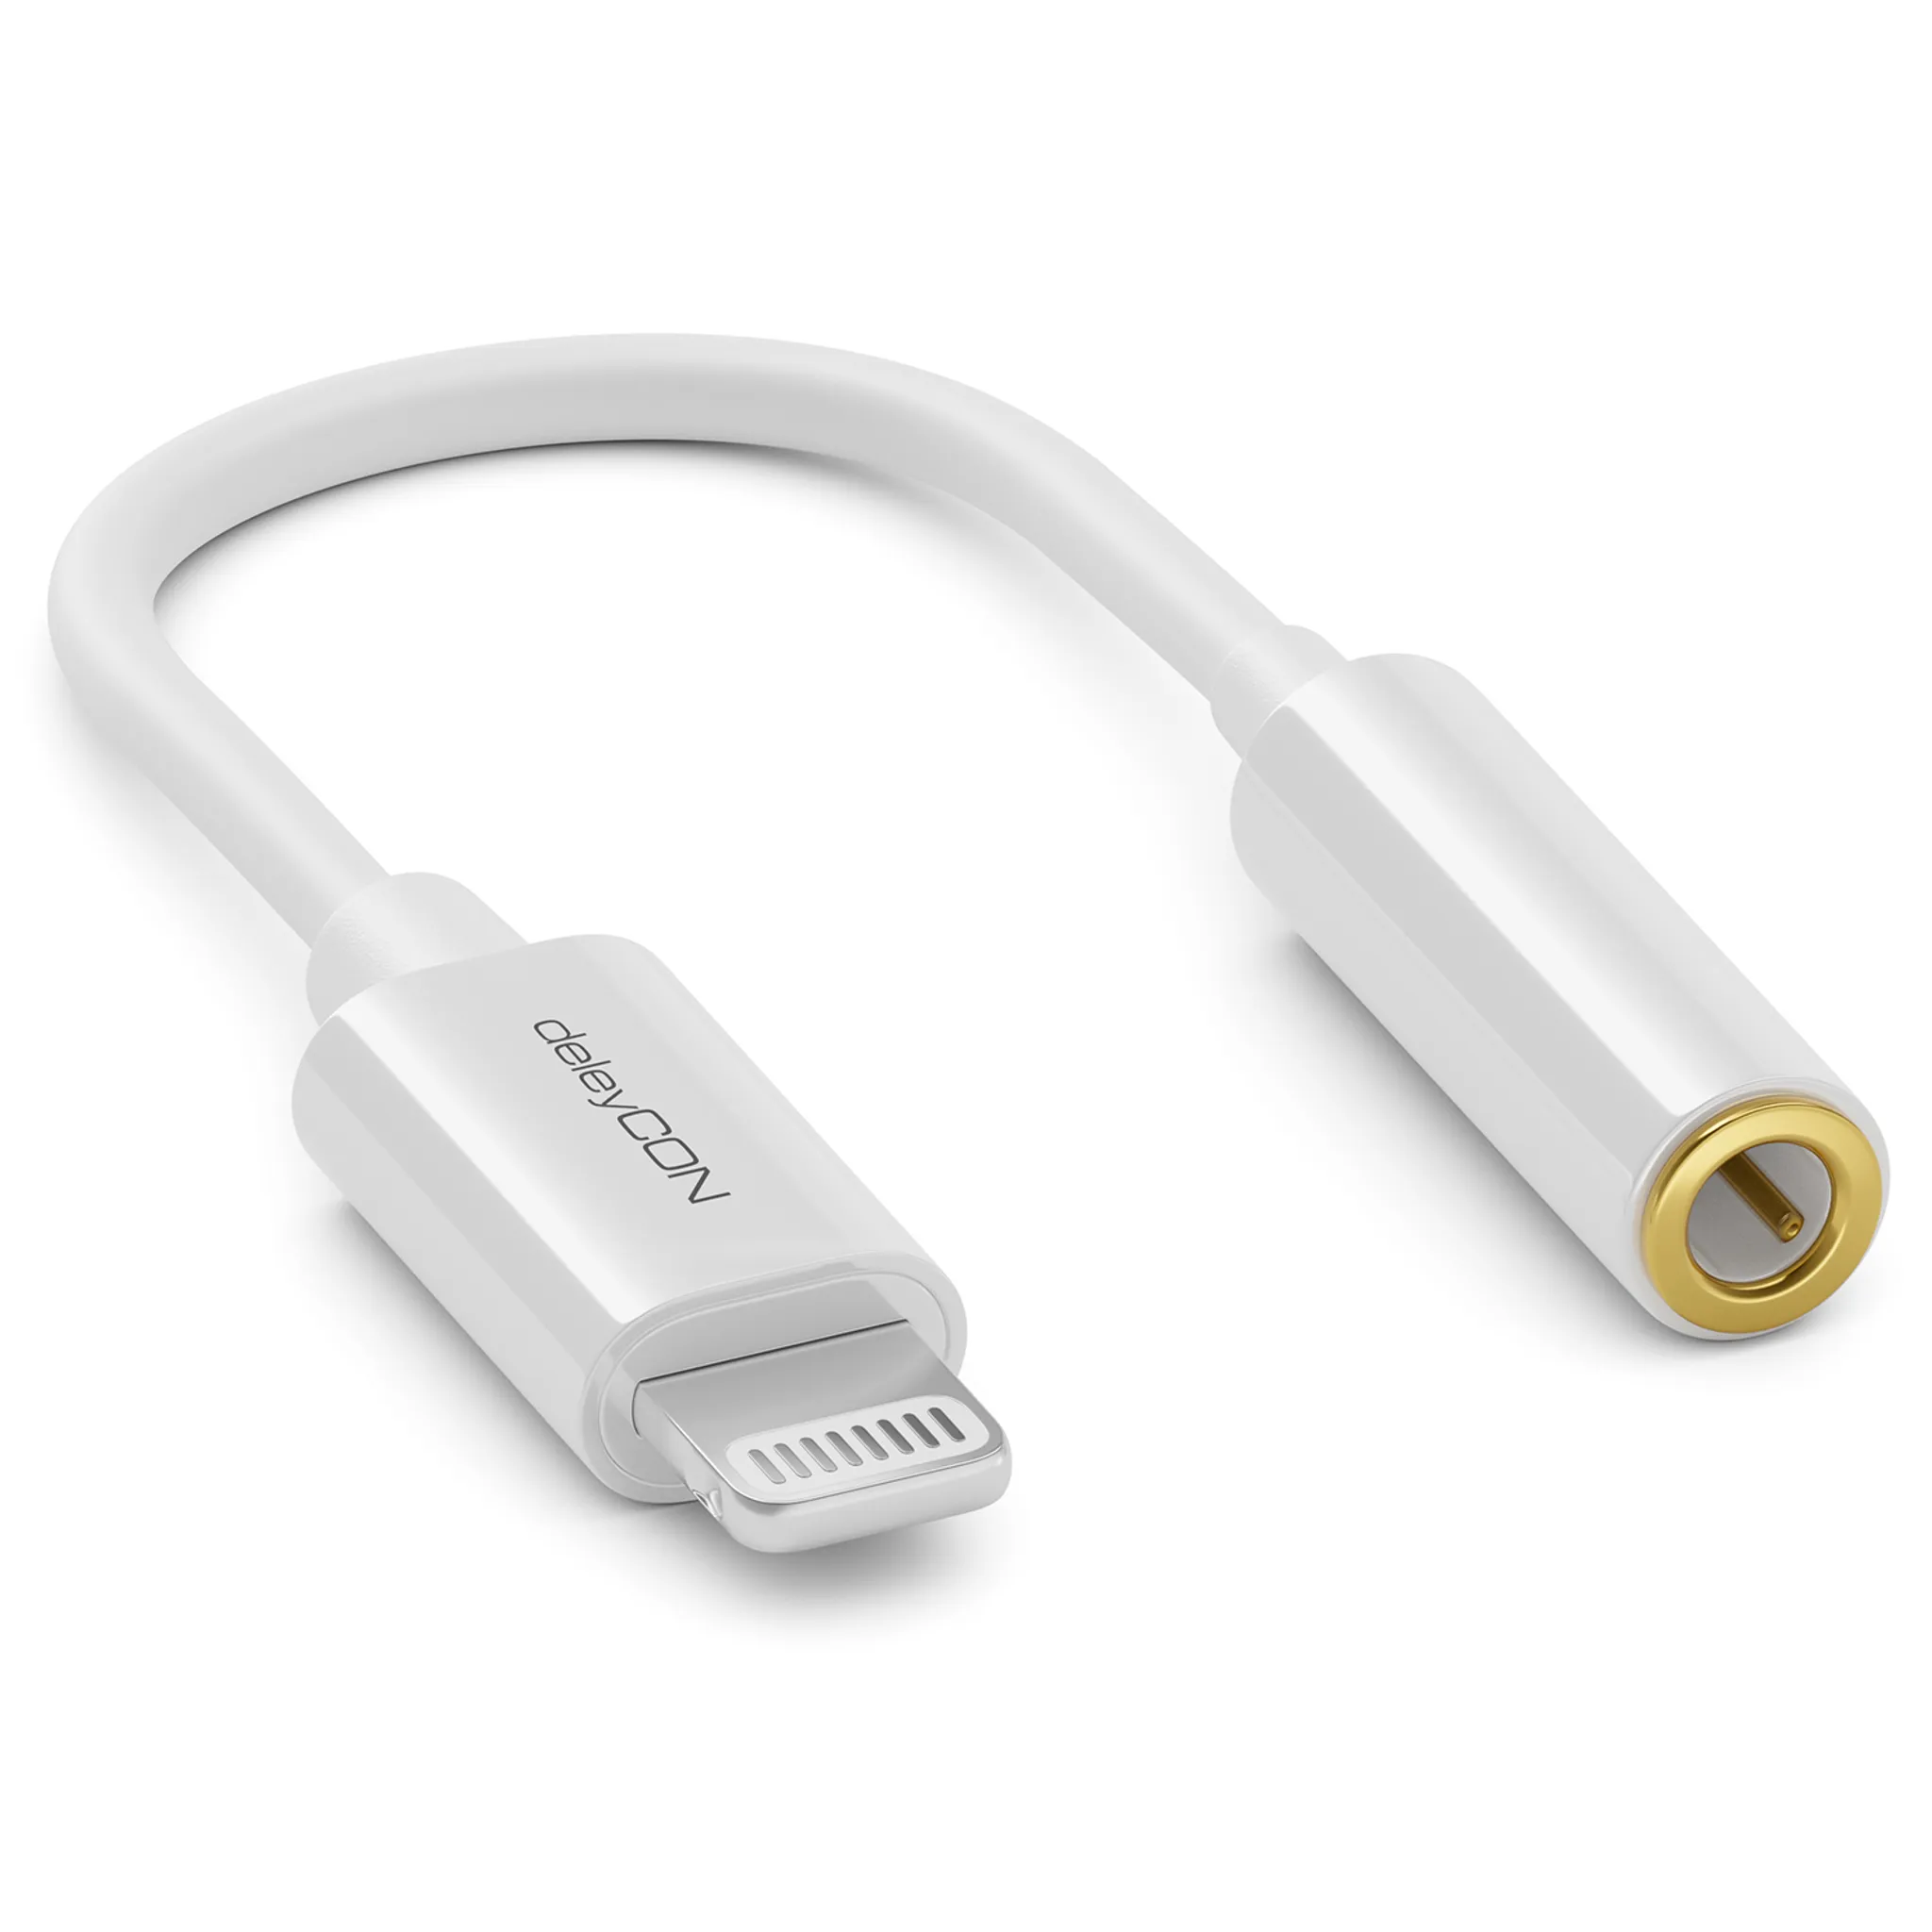 deleyCON Kopfhörer Adapter für iPhone Lightning 8-Pin auf 3,5mm Klinke  Schwarz, Klinke, Kabel & Adapter